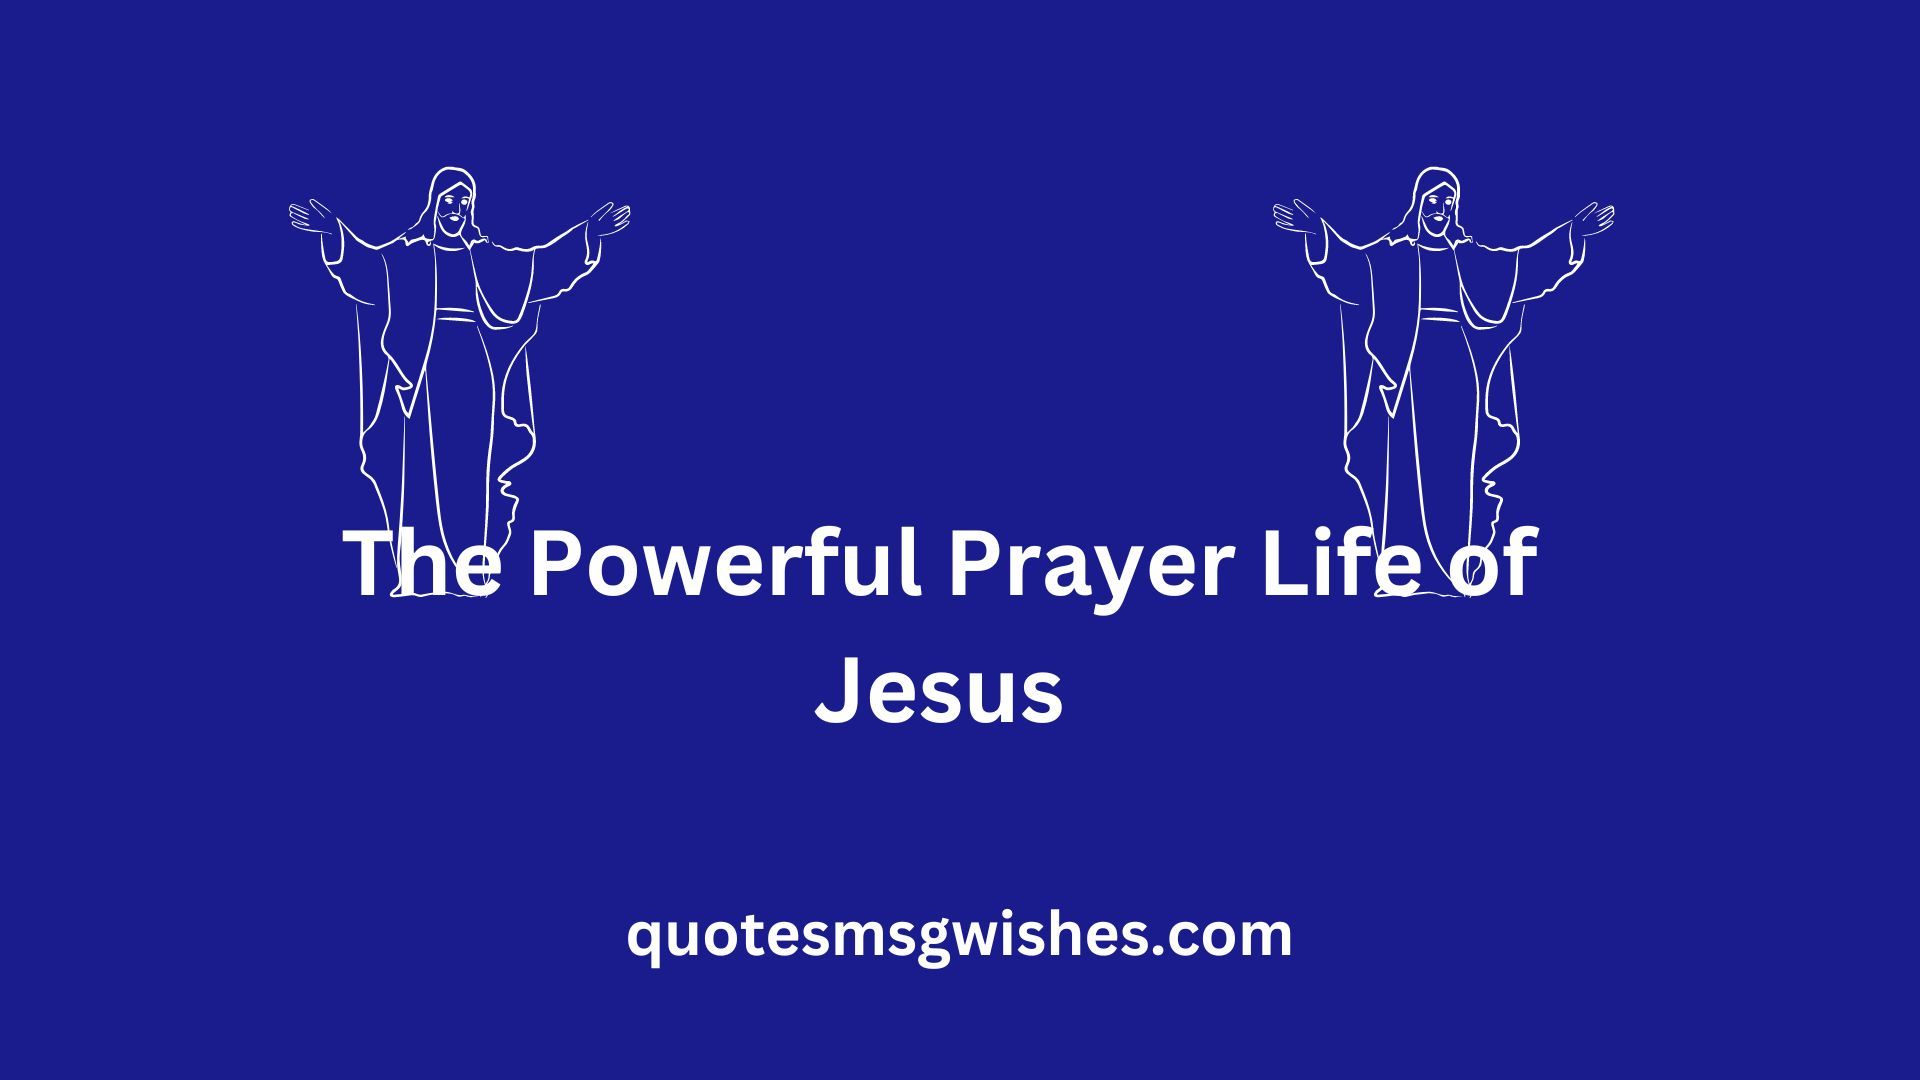 The Powerful Prayer Life of Jesus